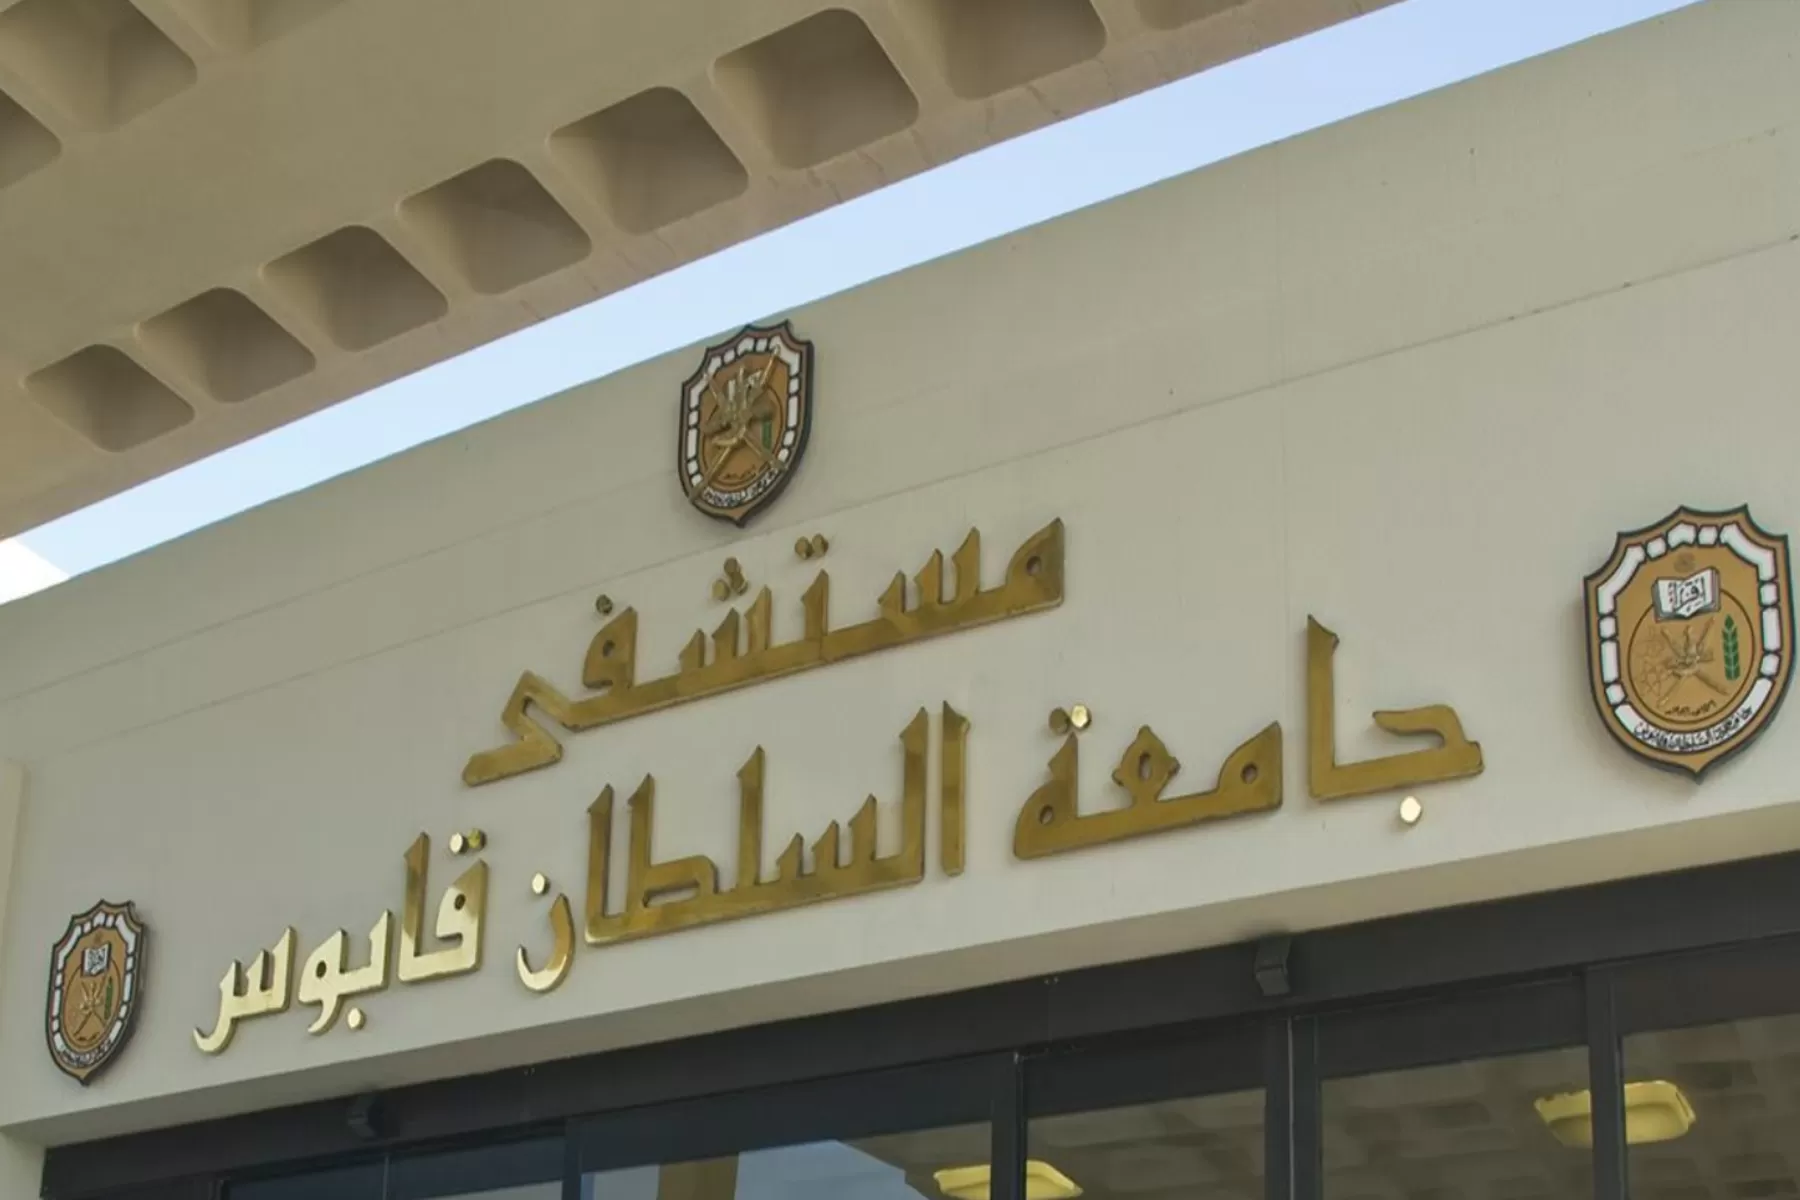 الفيديو أثار الجدل في أوساط العمانيين ودفع إدارة مستشفى جامعة السلطان قابوس للرد عبر بيان رسمي